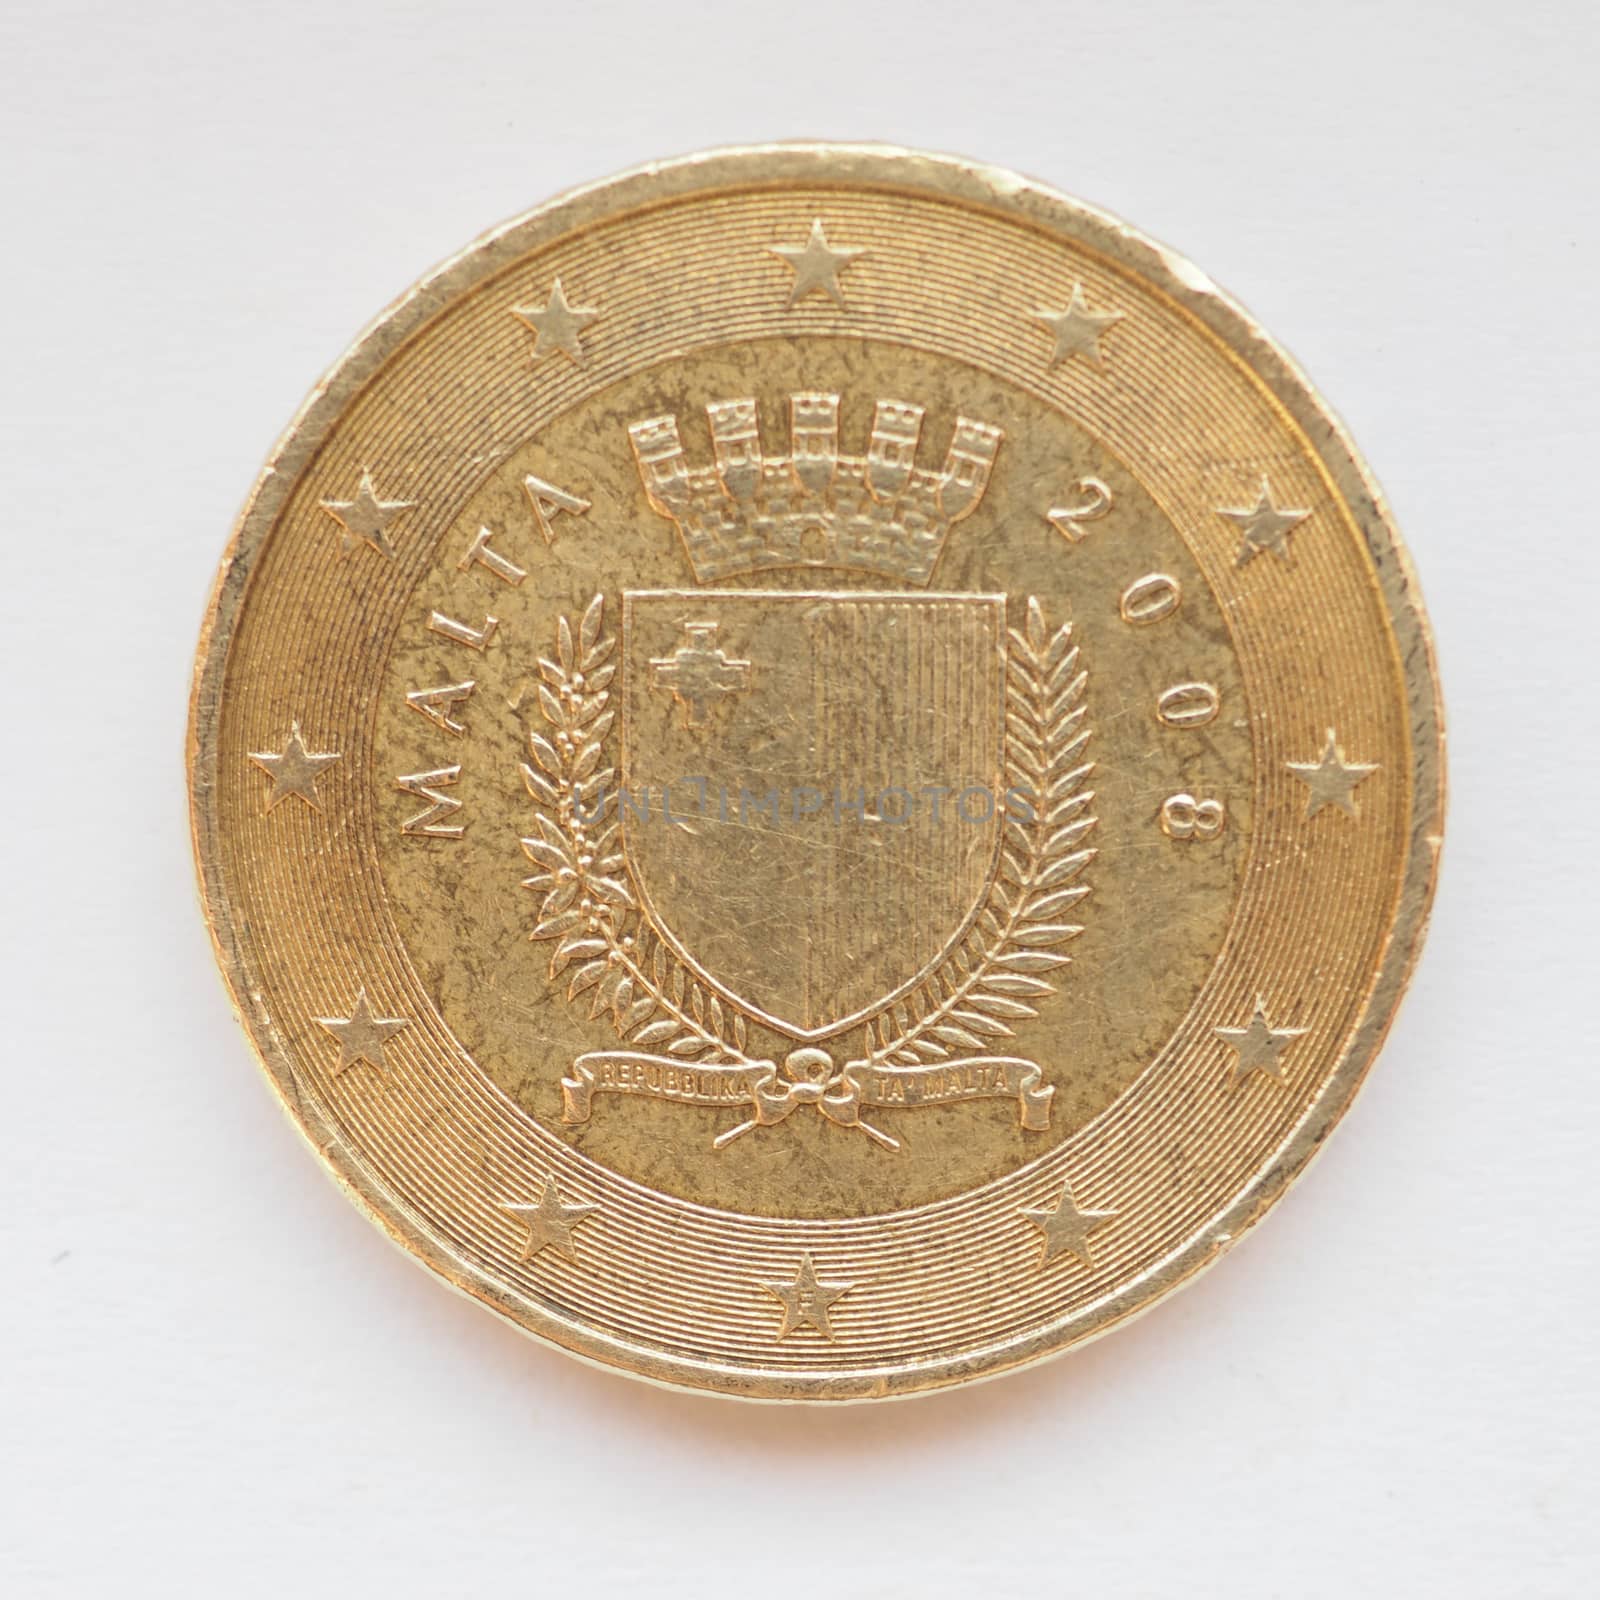 Maltese Euro coin by claudiodivizia